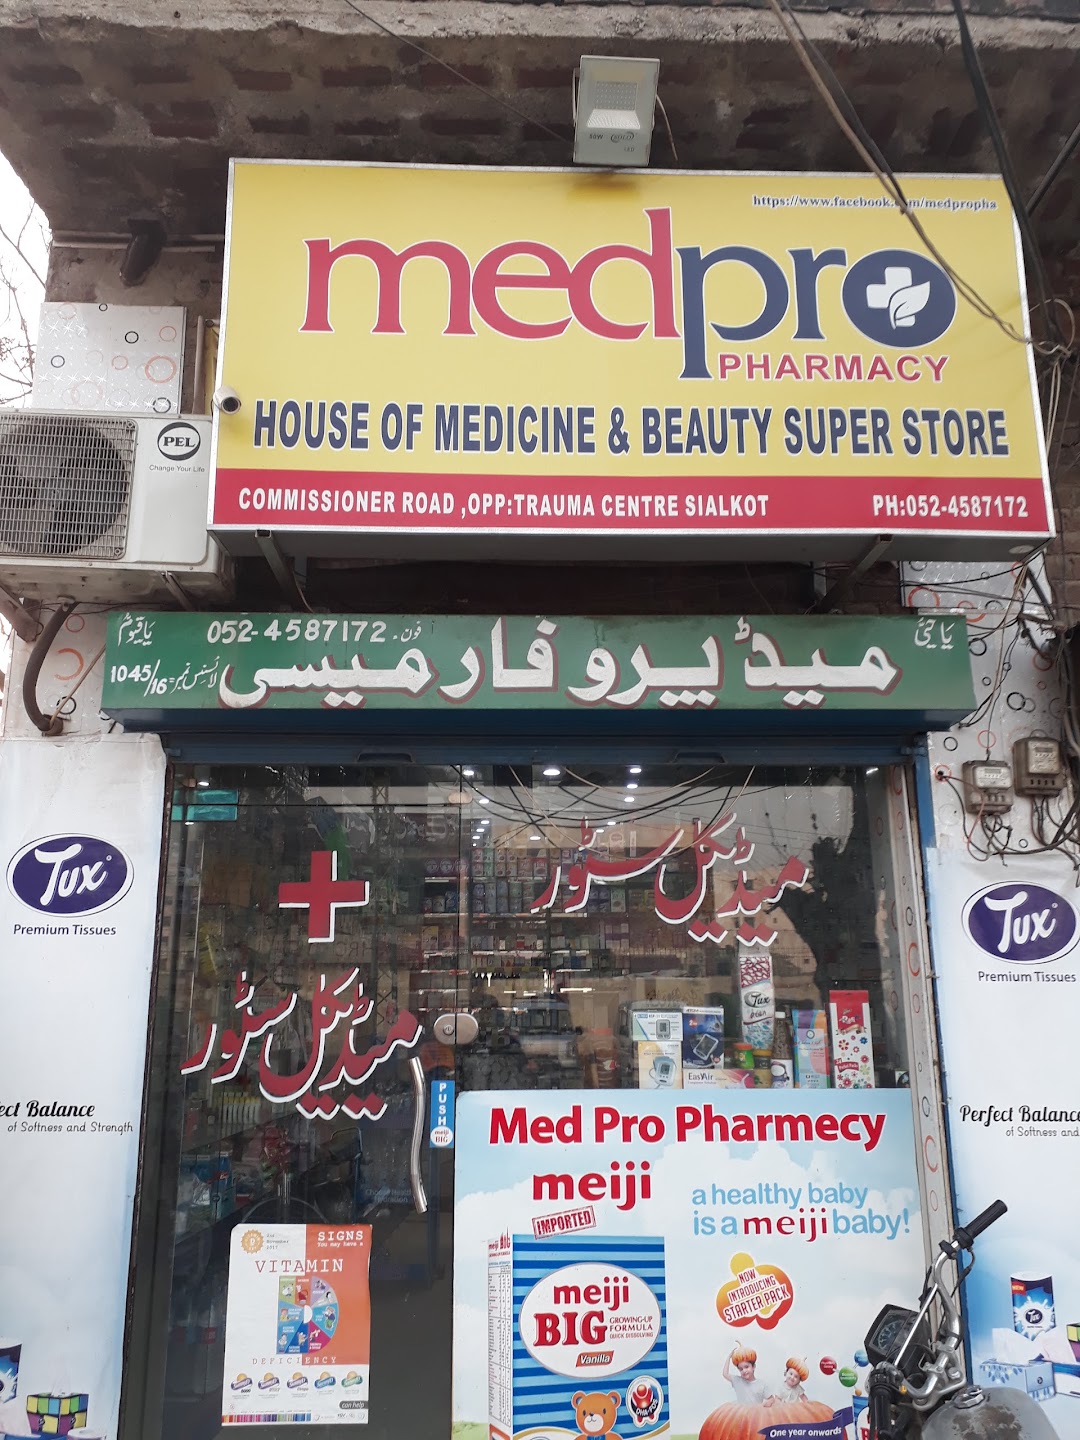 Medpro Pharmacy